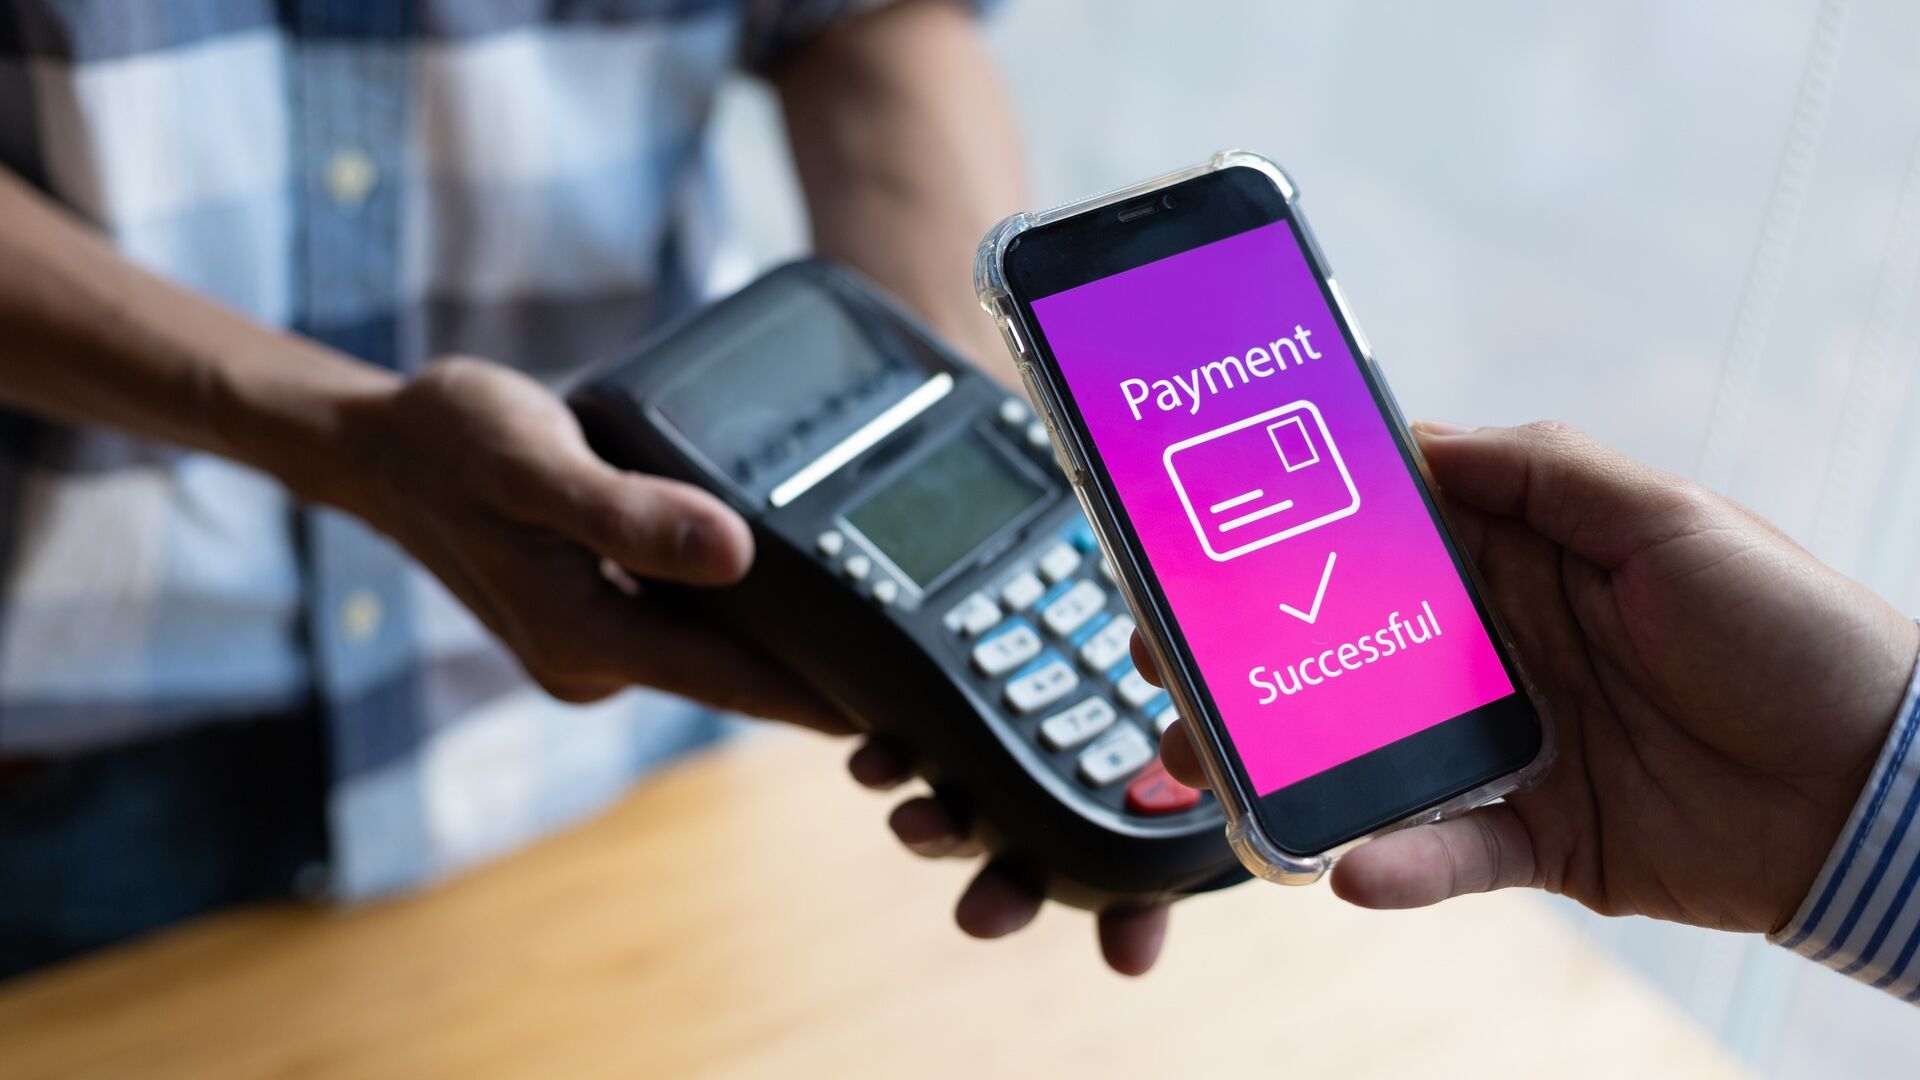 Mobilbetalinger: Fordelene ved mobilbetalinger skal kommunikeres effektivt og sikkerhedsproblemer elimineres for at opnå forbrugertillid